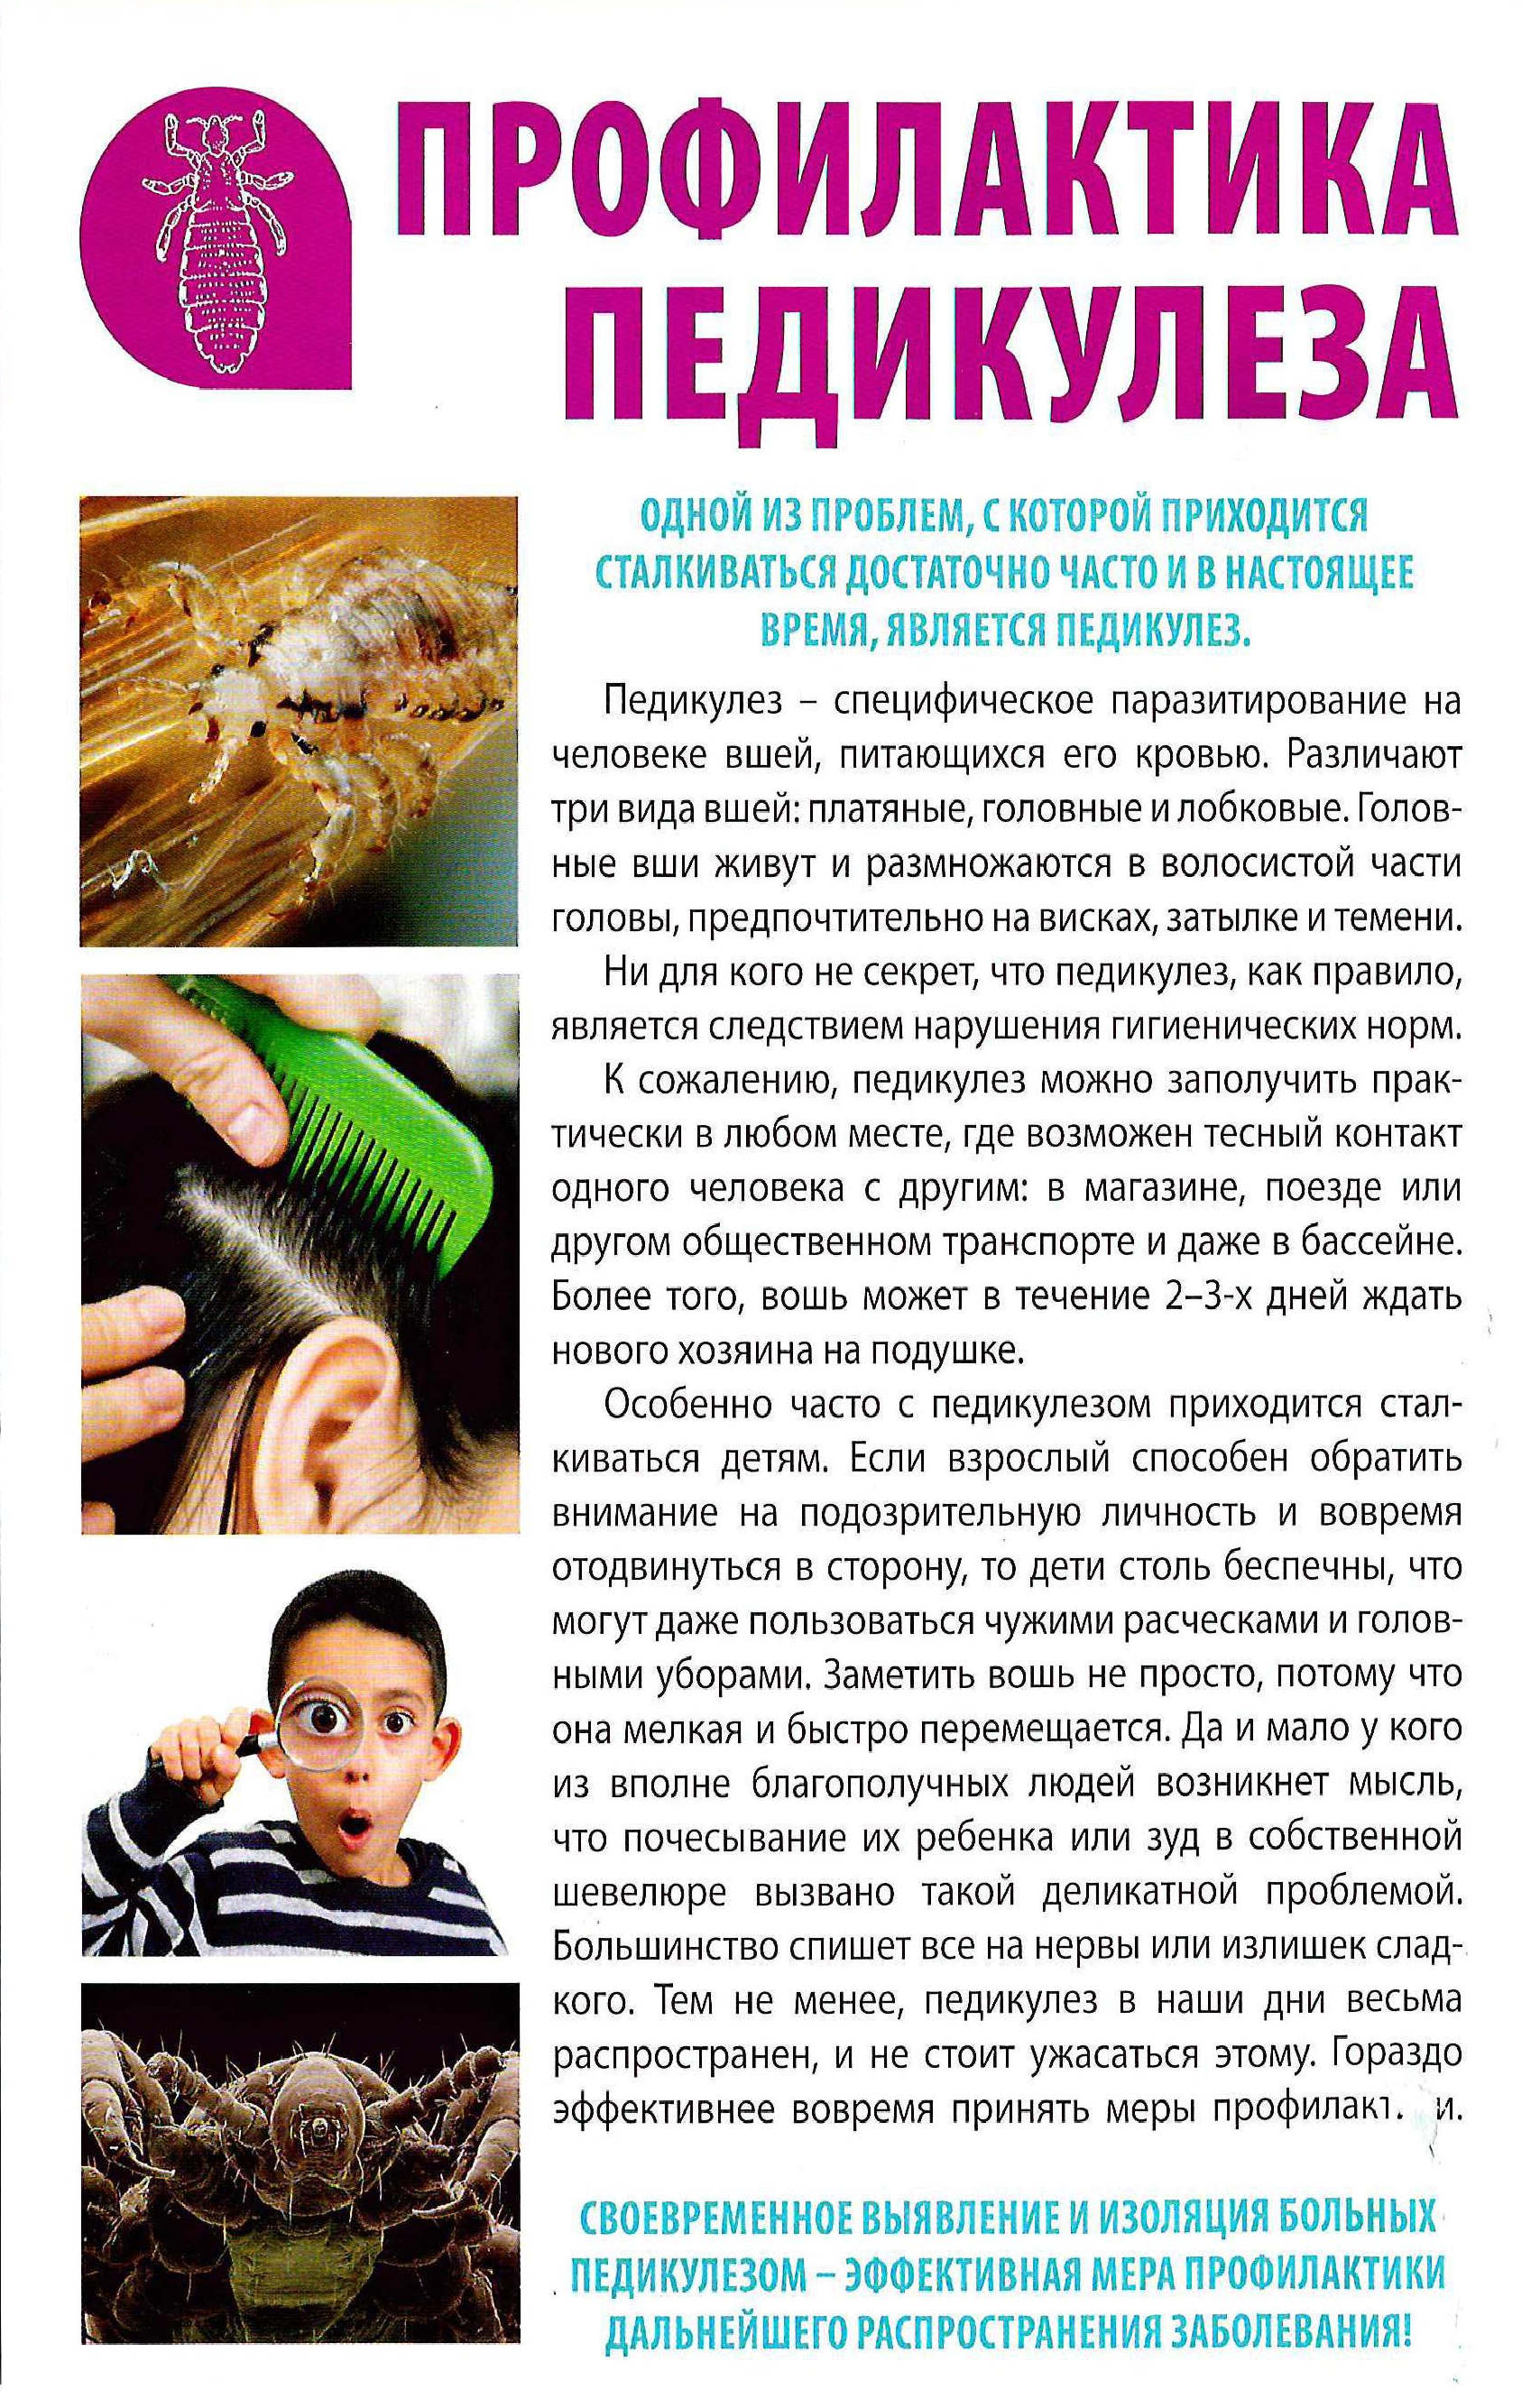 Бельевые вши: как избавиться в домашних условиях / vantazer.ru – информационный портал о ремонте, отделке и обустройстве ванных комнат